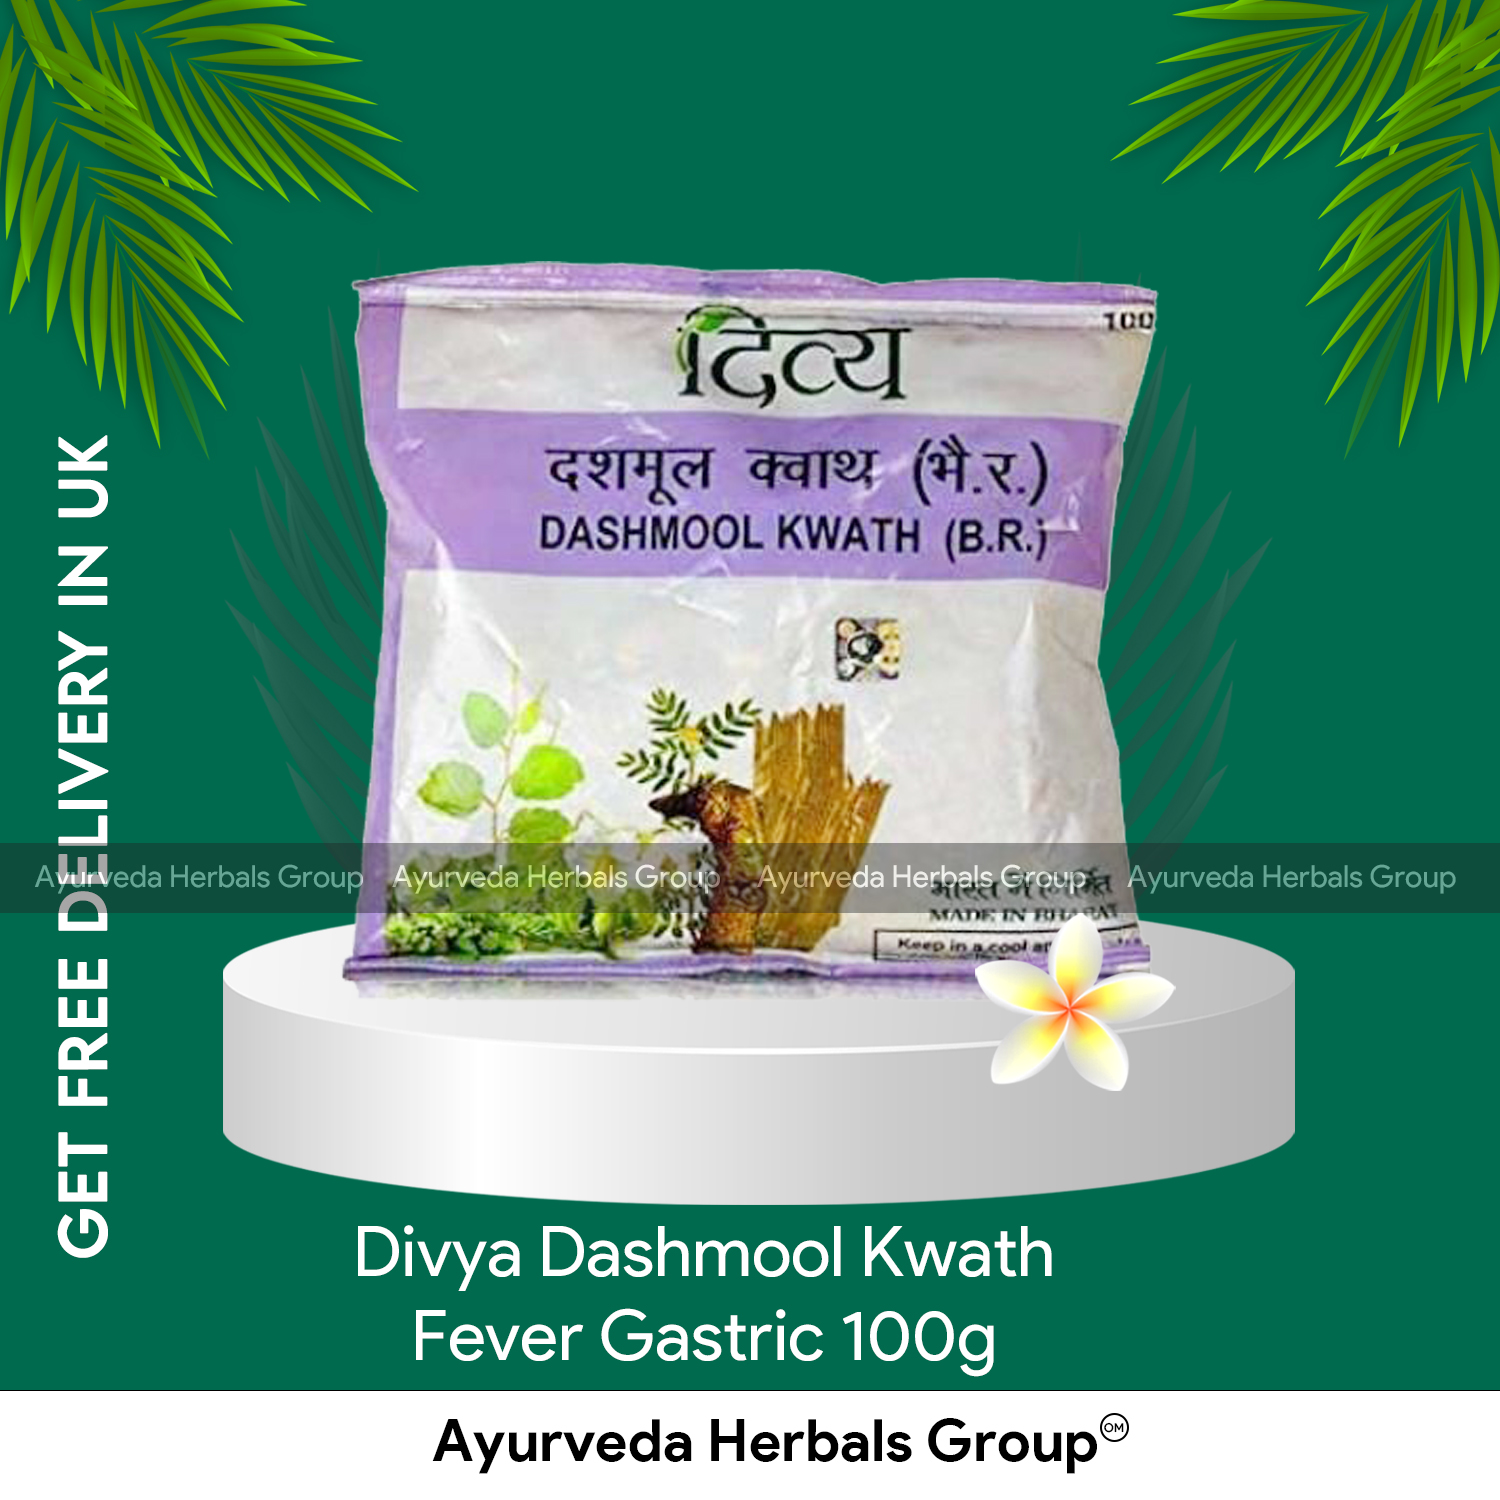 Swami Ramdev Patanjali UK Divya Dashmool Kwath Fever Gastric 100g |